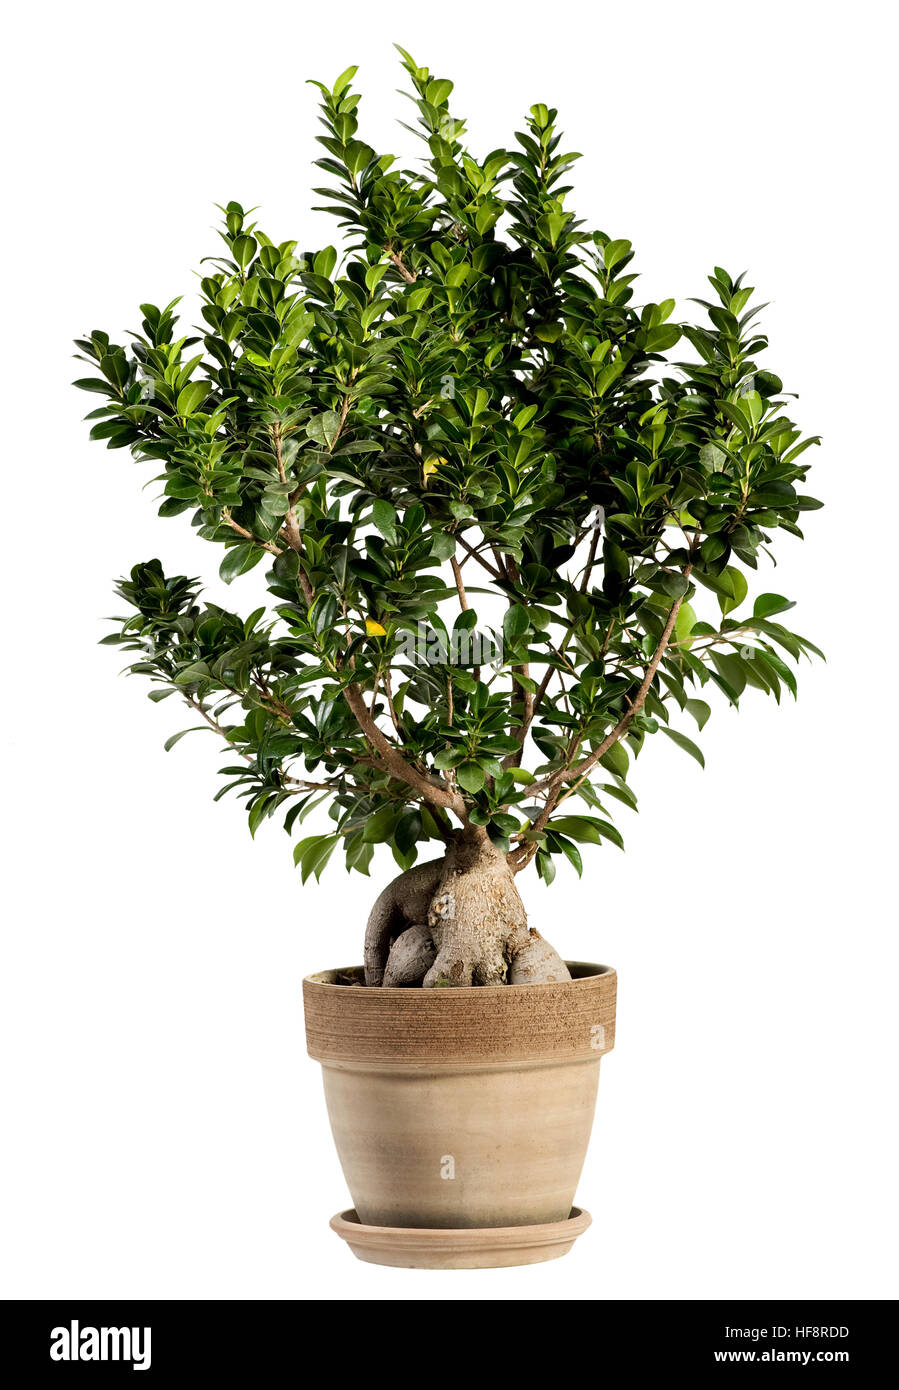 Frischen Look von Ginseng Ficus Bonsai-Baum auf normalen braunen Topf. Isolated on White Background. Stockfoto